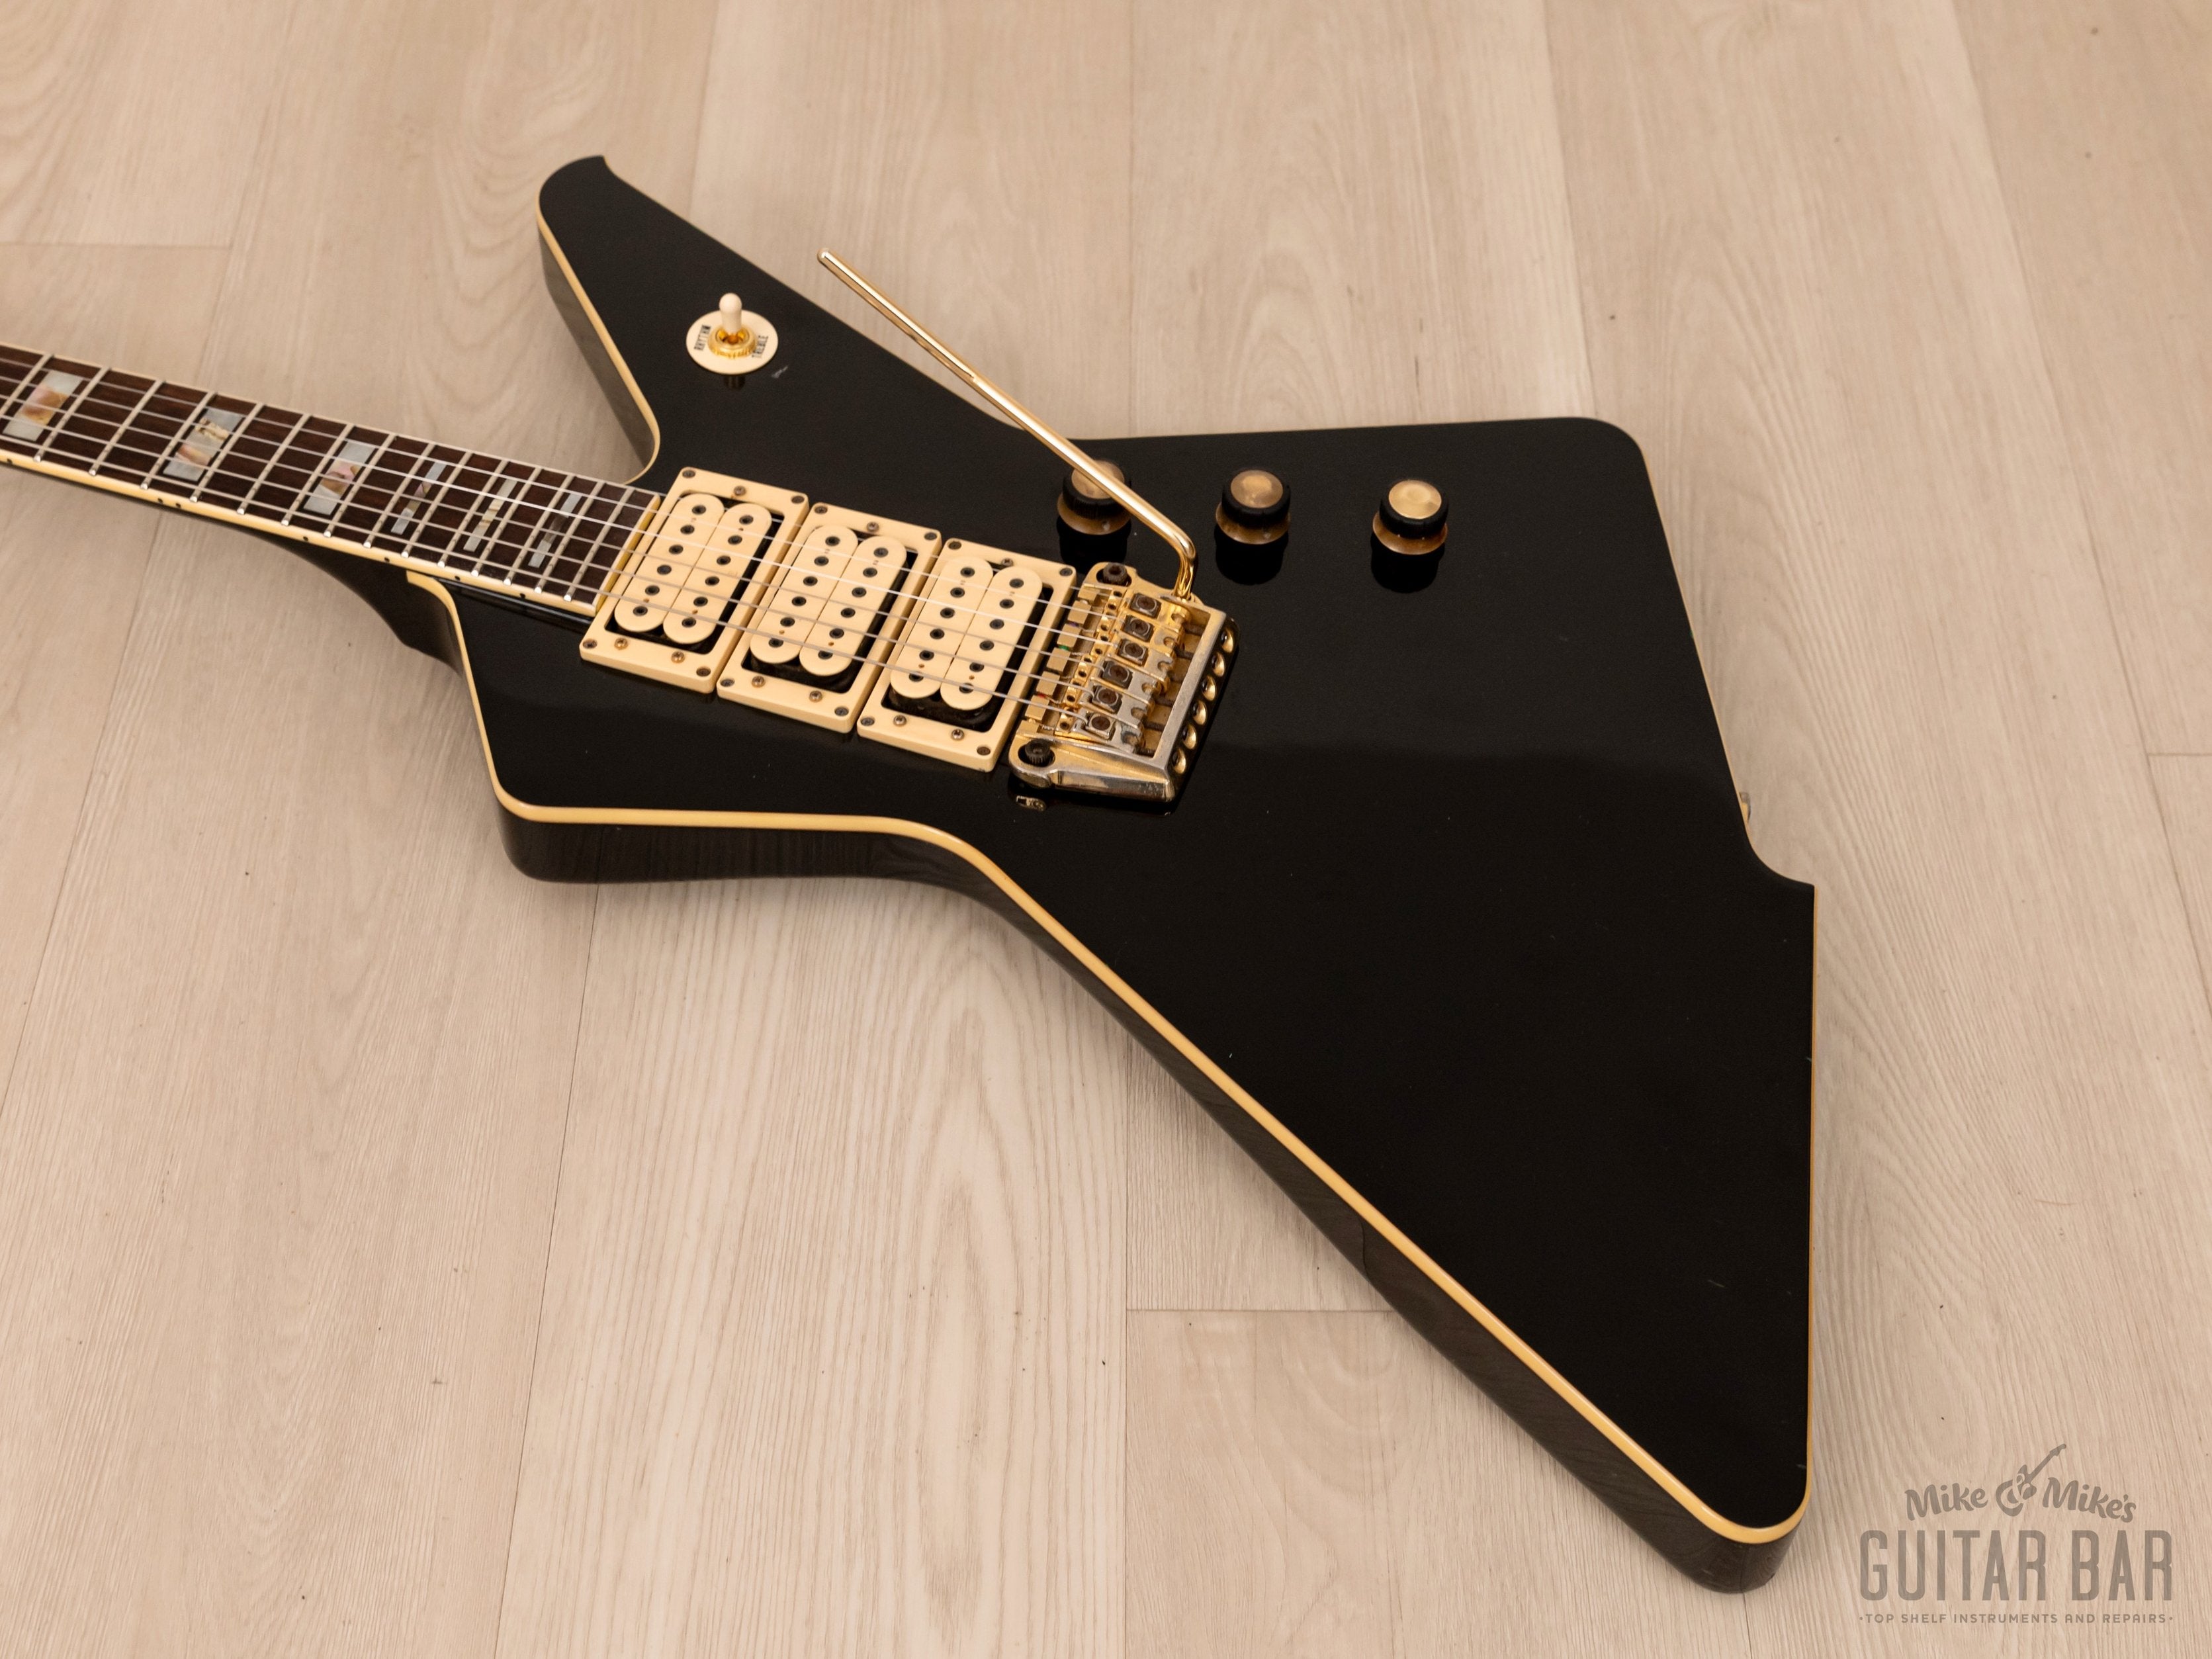 1984 Ibanez Destroyer II DT555 Vintage Electric Guitar Black 100% Original w/ Case, Japan